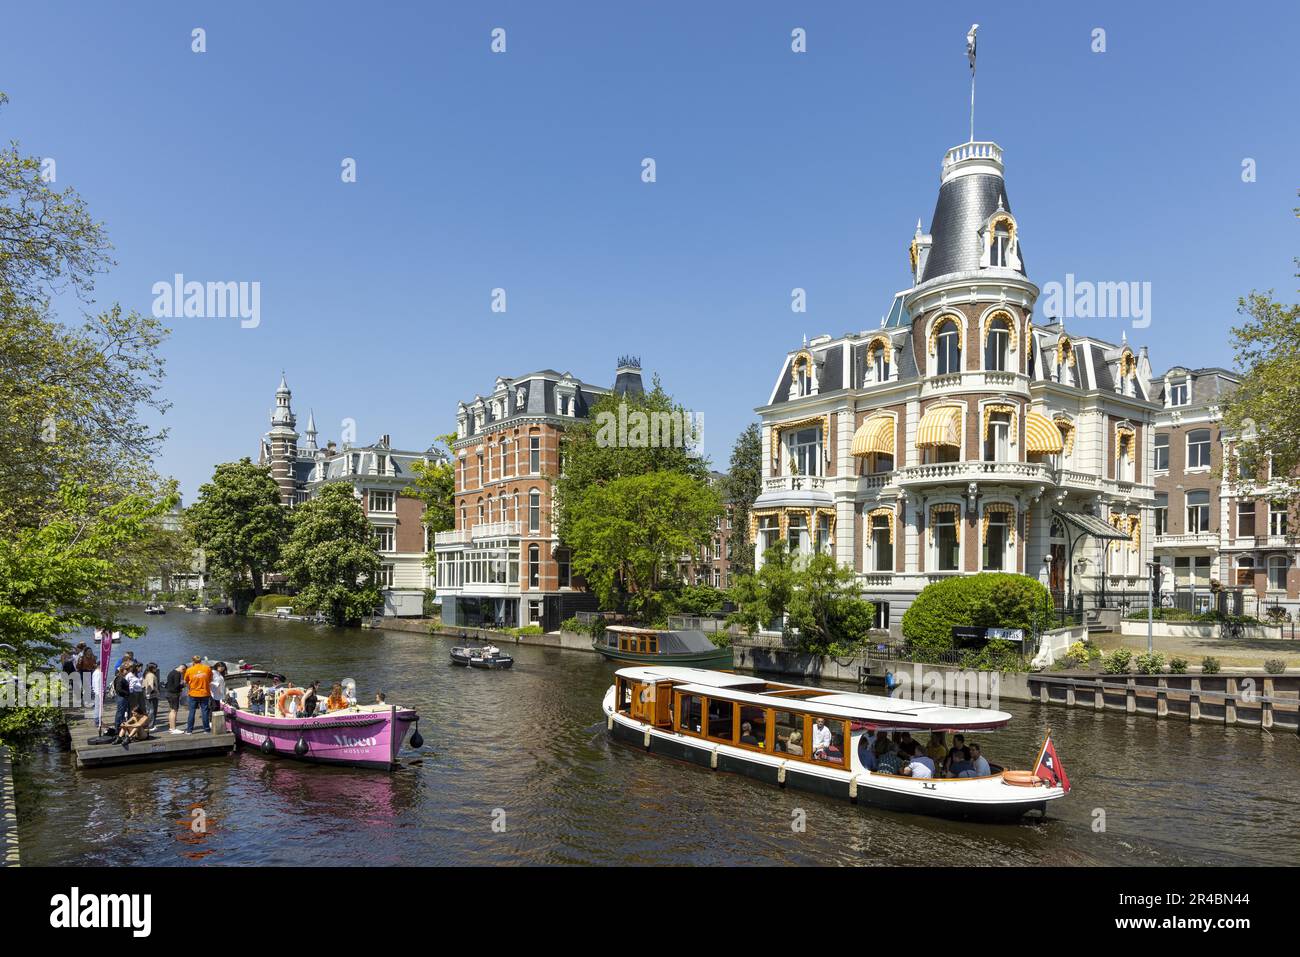 Barche su un canale, Amsterdam, capitale dei Paesi Bassi, Olanda, Europa occidentale Foto Stock